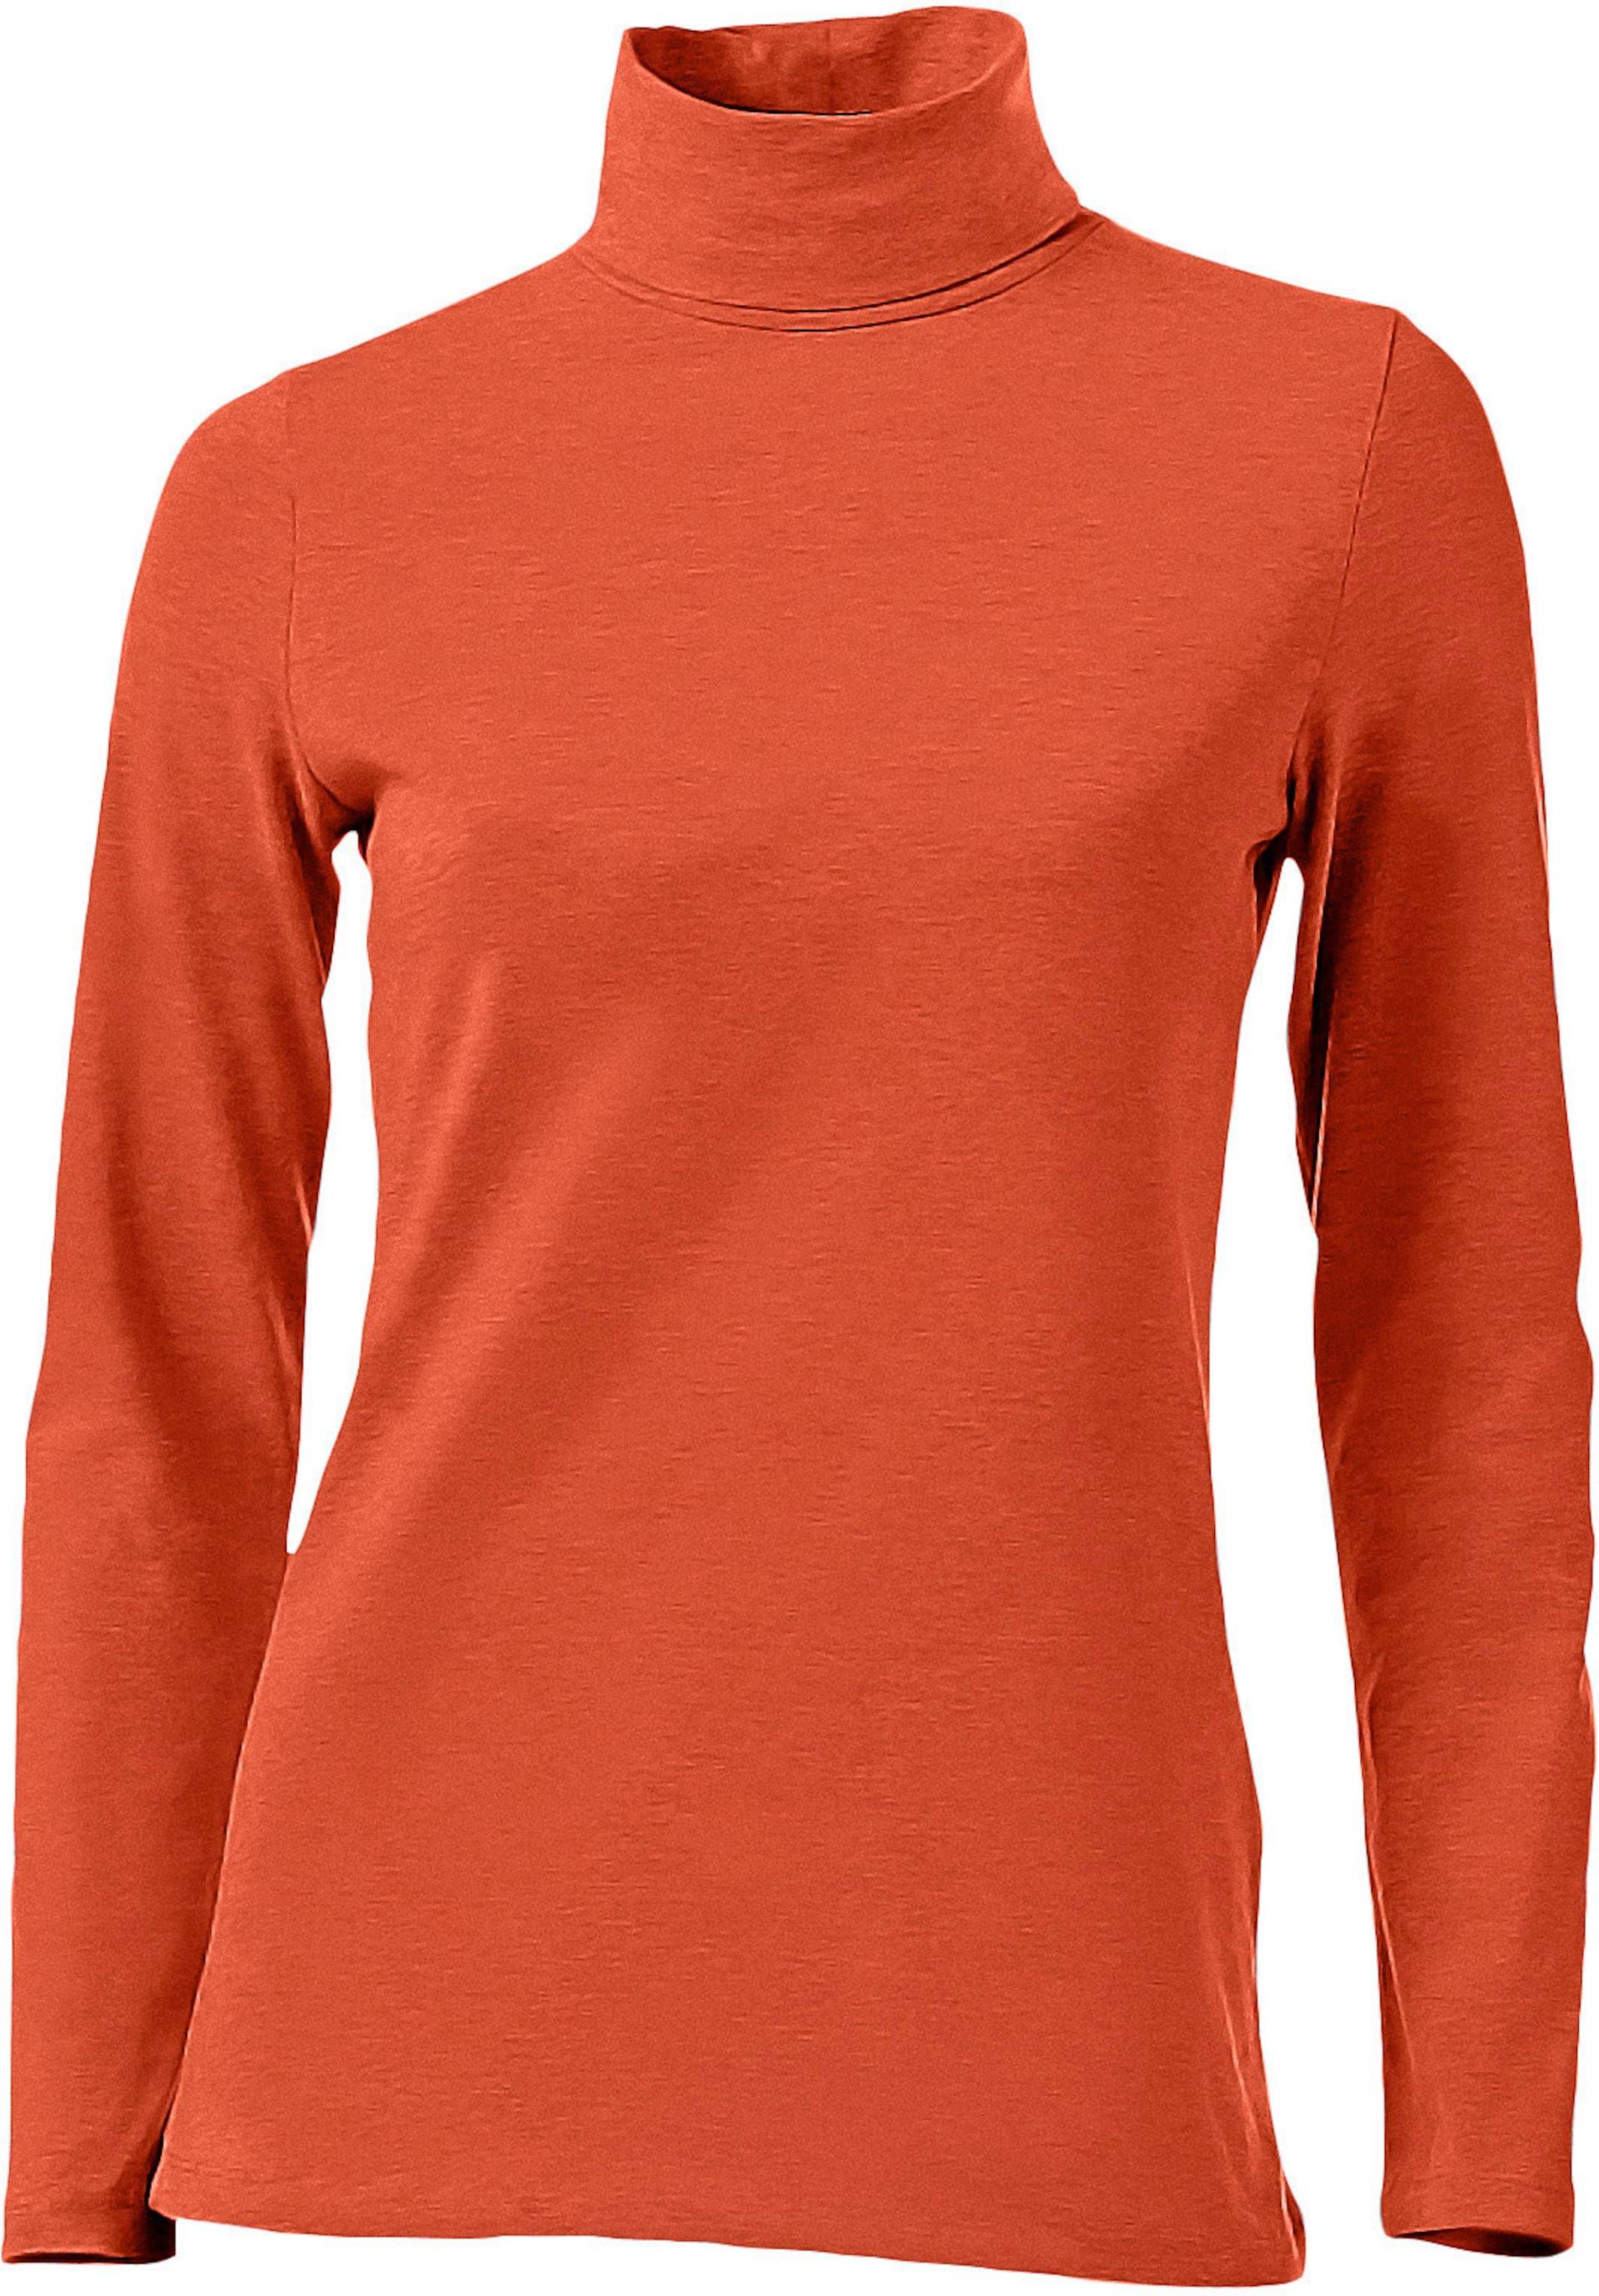 Rollkragen-Shirt in orange von heine